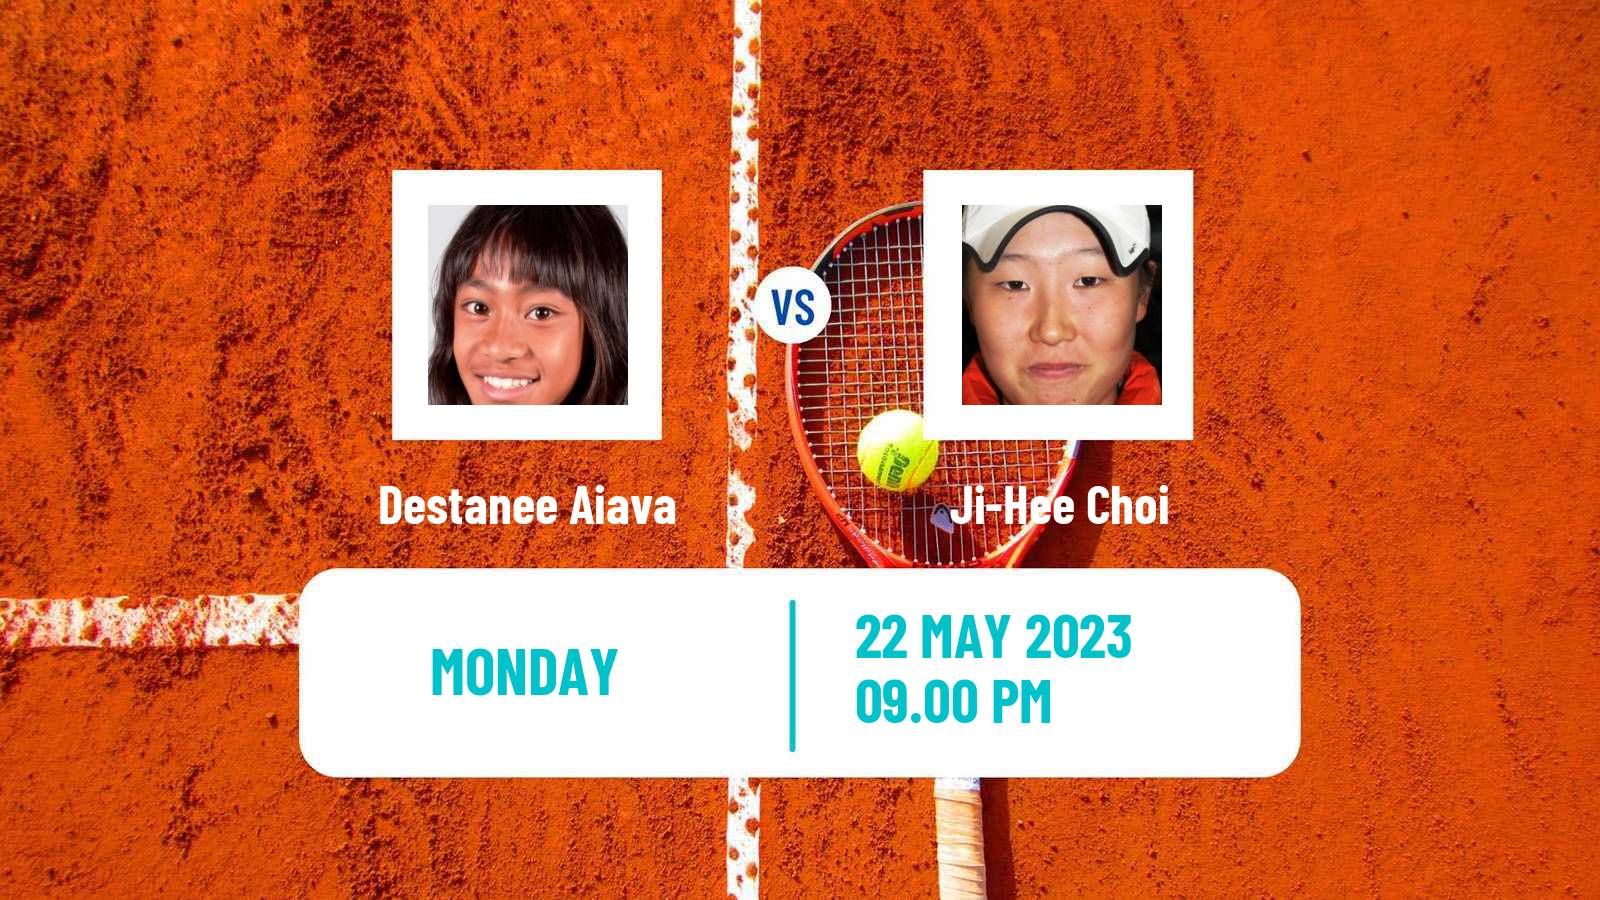 Tennis ITF W25 Goyang Women Destanee Aiava - Ji-Hee Choi